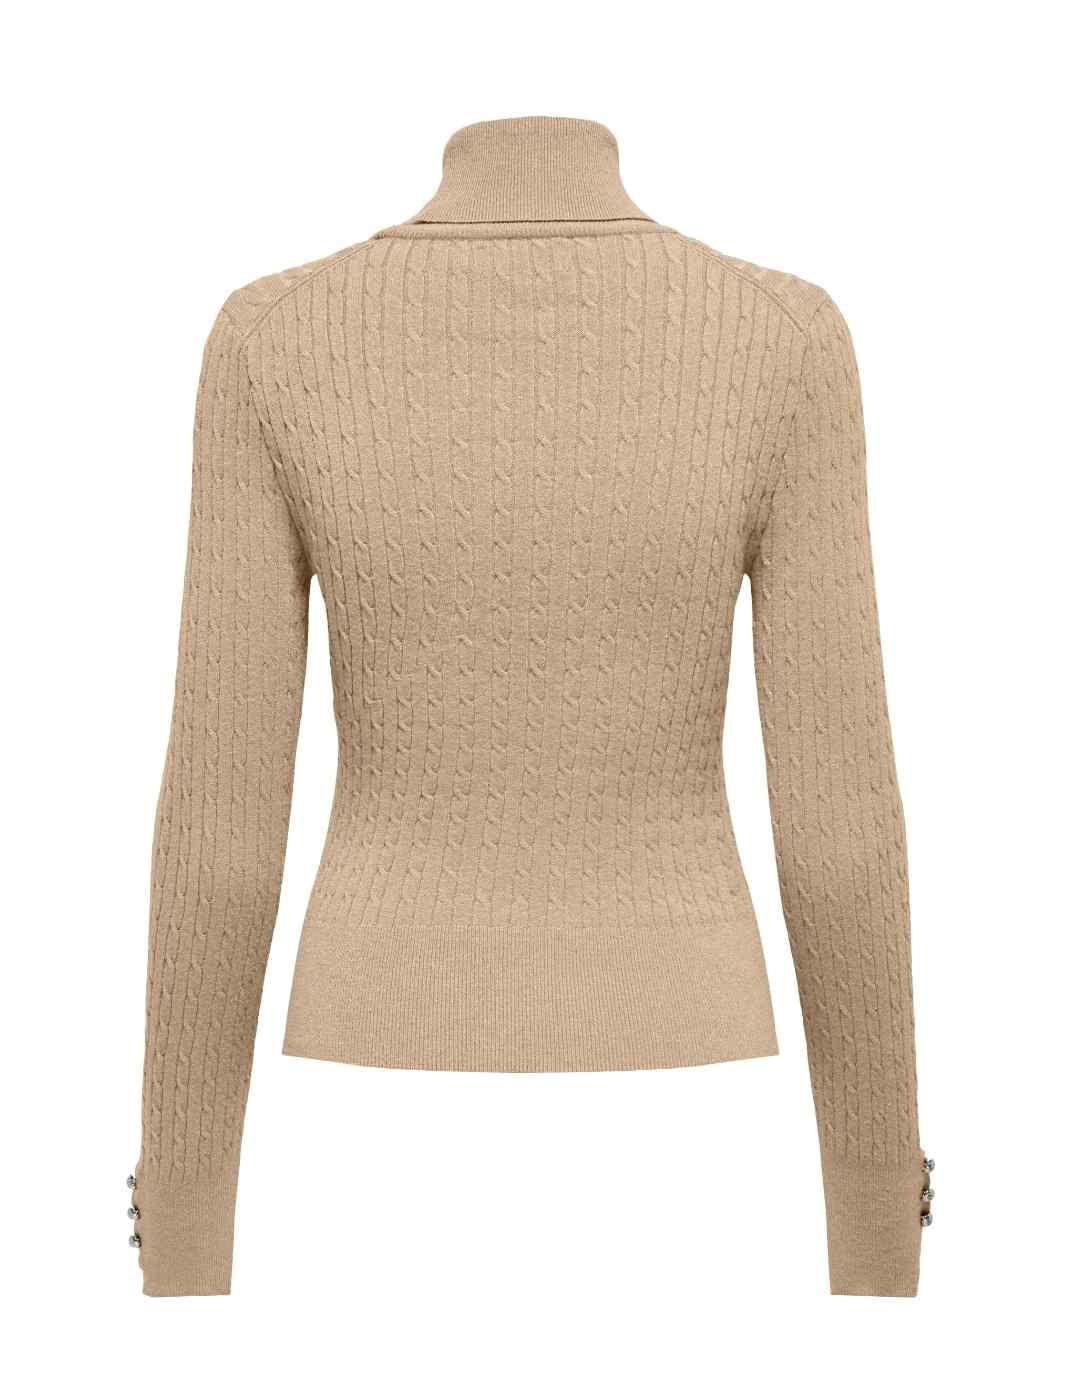 Comprar Jersey de cuello alto para mujer, suéter holgado de punto